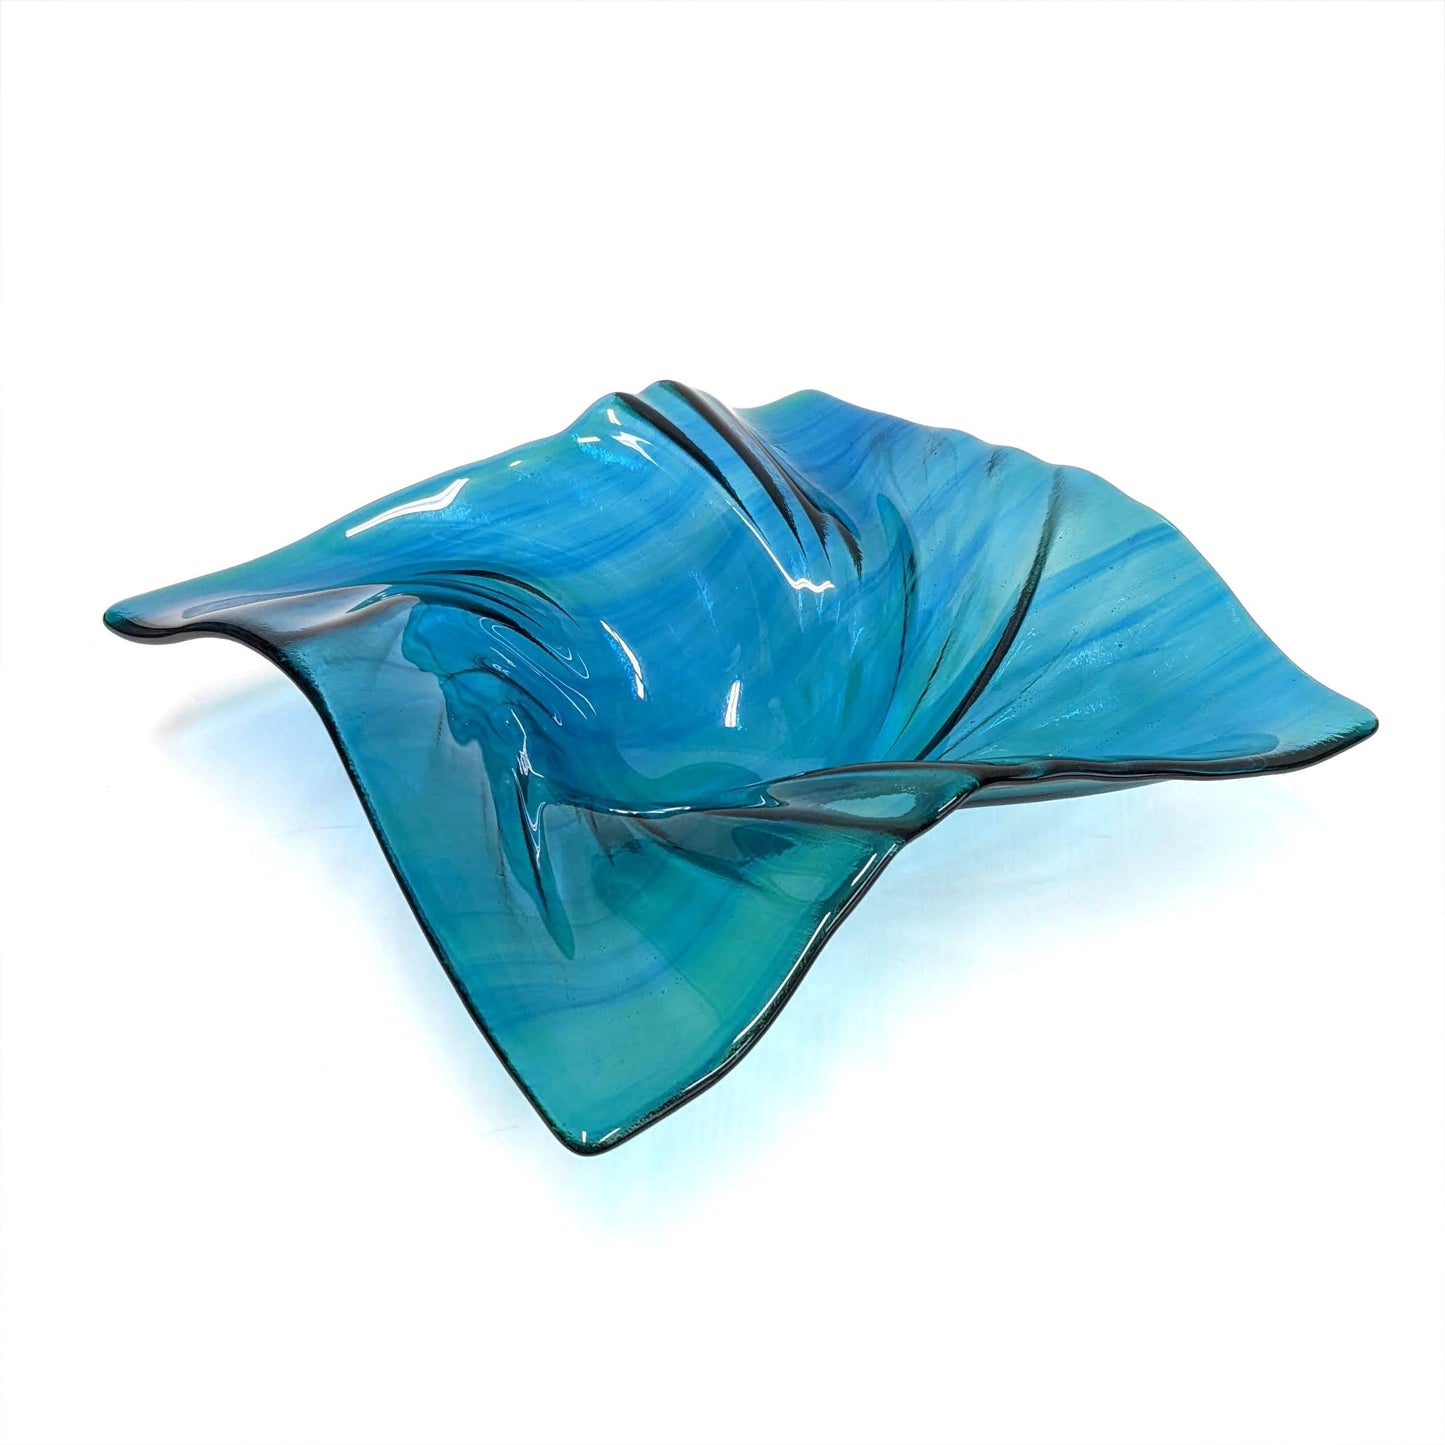 Aqua Teal Turquoise Glass Art Wave Bowl